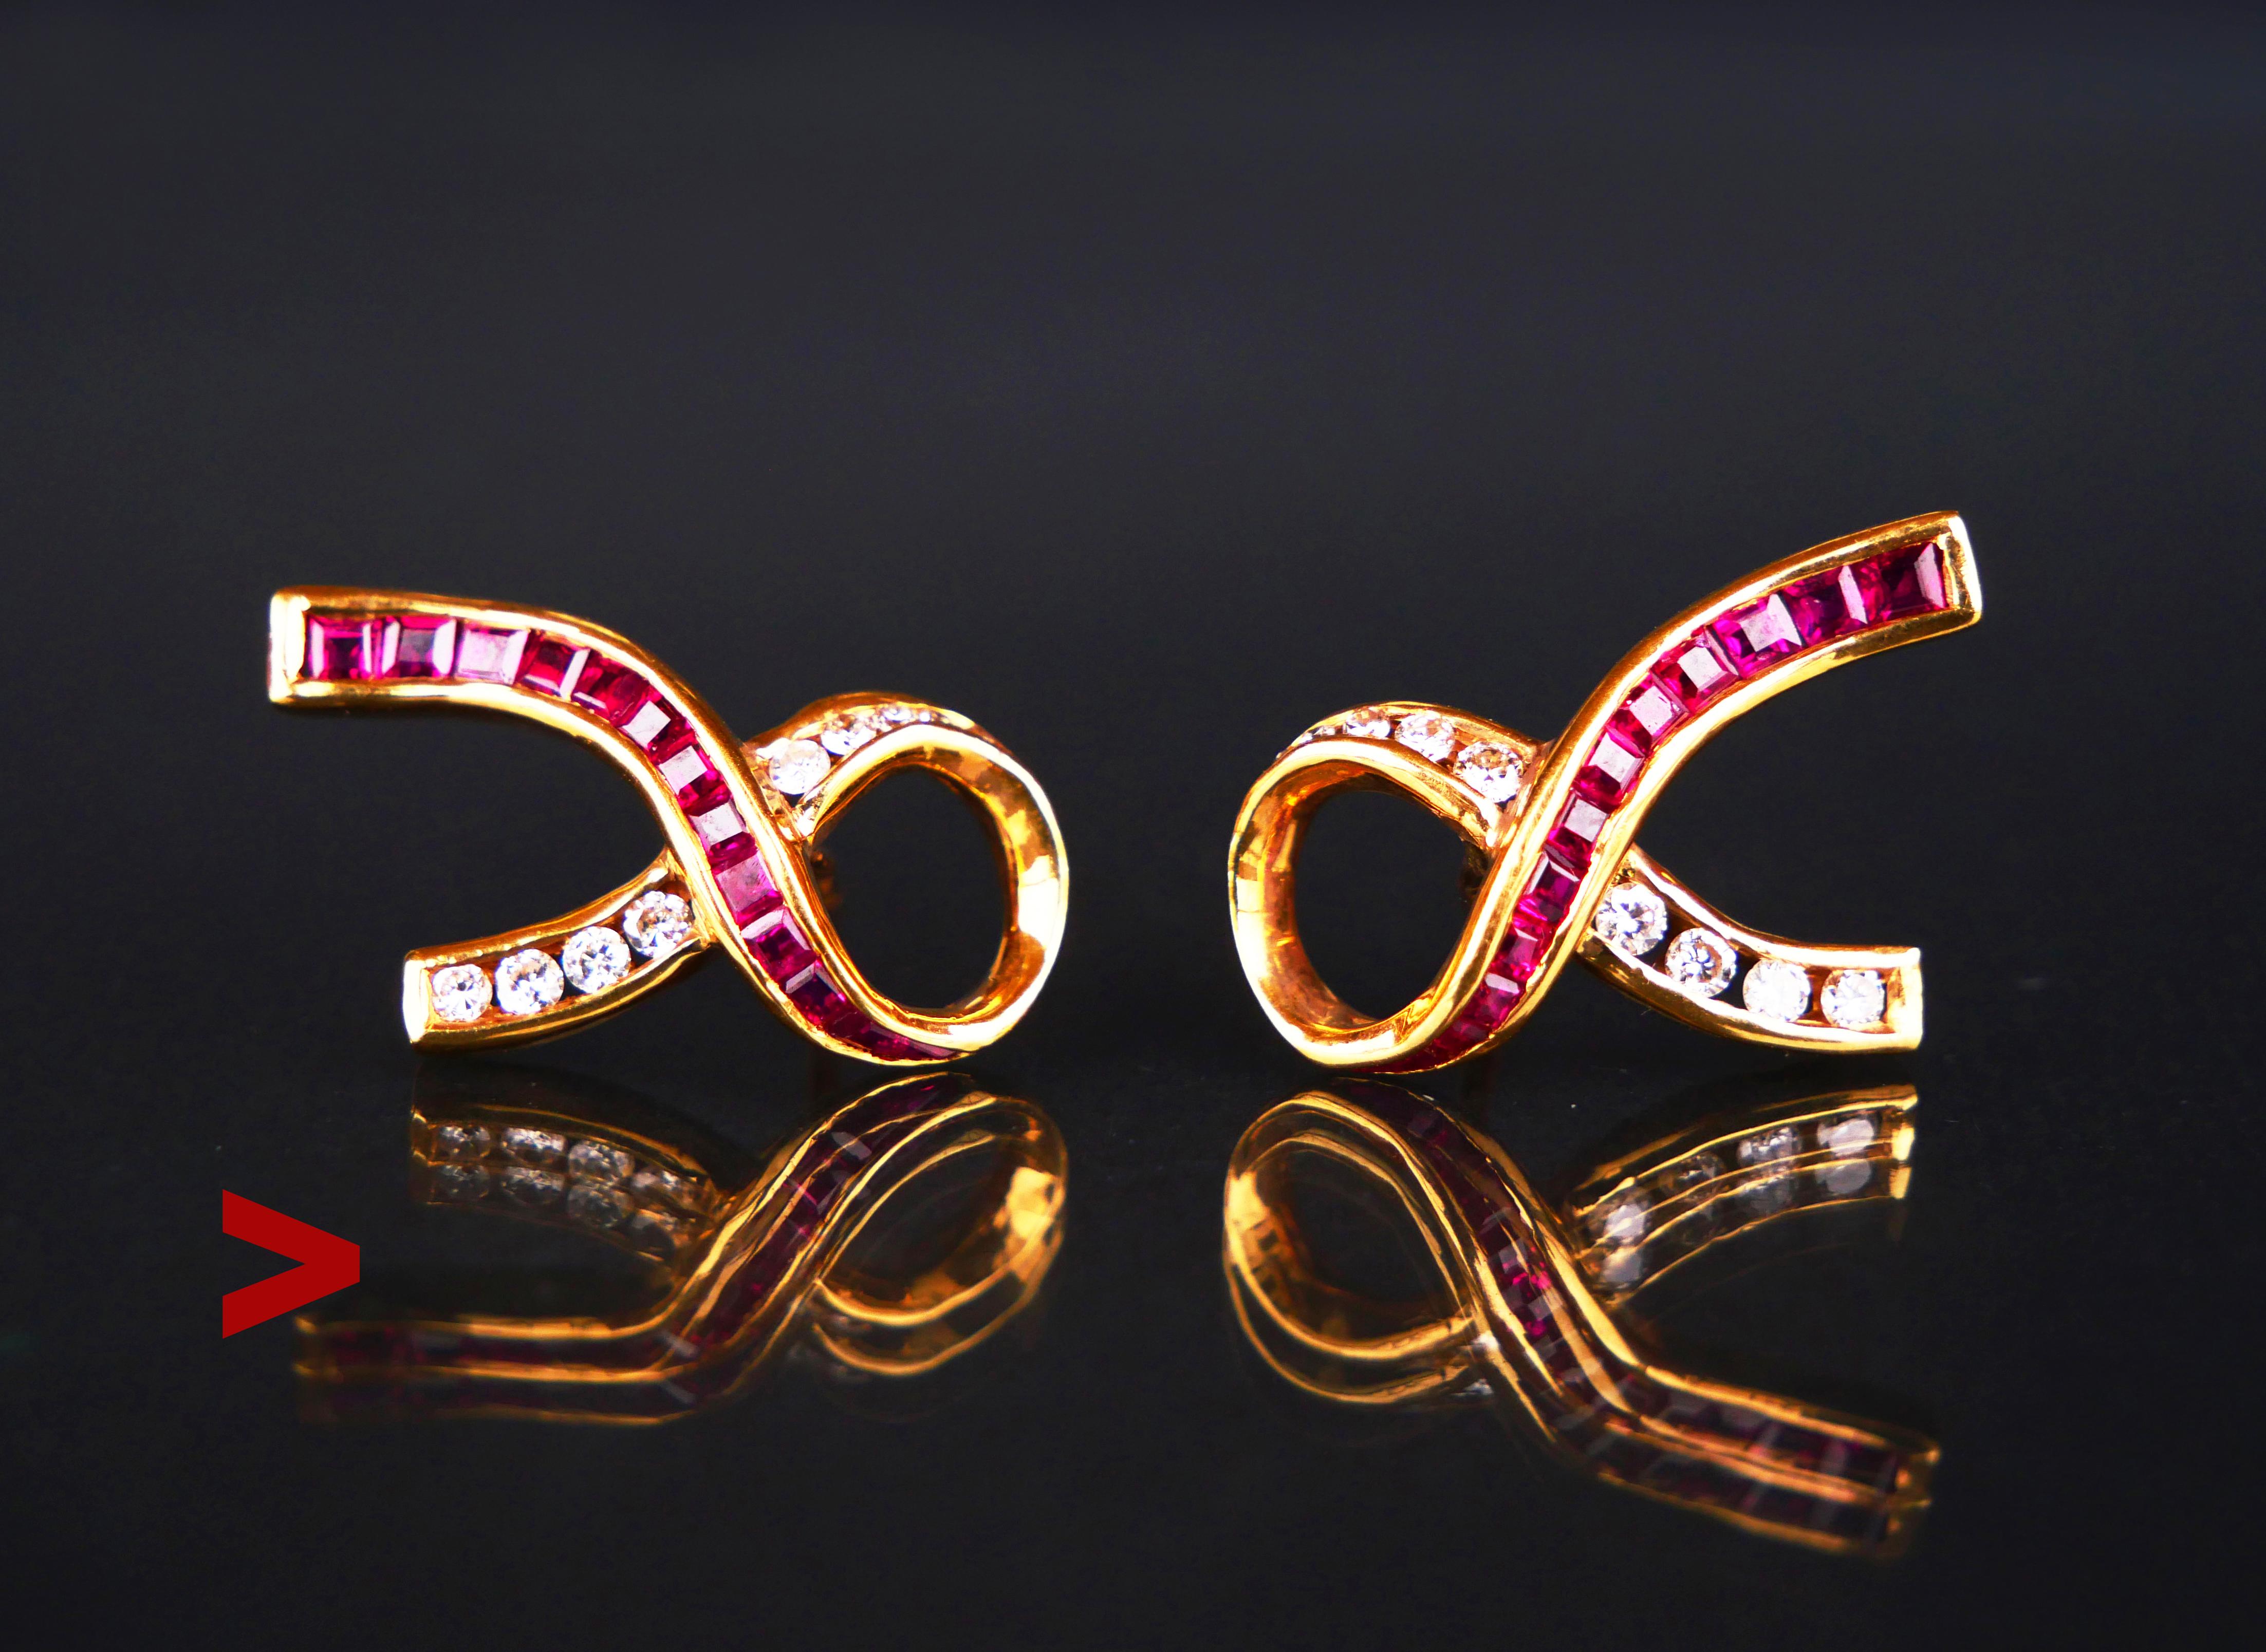 Ein Paar Vintage-Ohrringe in Form einer Schleife aus 18K Gelbgold, verziert mit
Rubine und Diamanten.

Schwedische Kronen, 18K-Punzen auf beiden Stopfen.

Jeder Ohrring ist 22 mm lang x 12 mm breit x 5 mm tief.

Jeder Ohrring enthält 12 natürliche